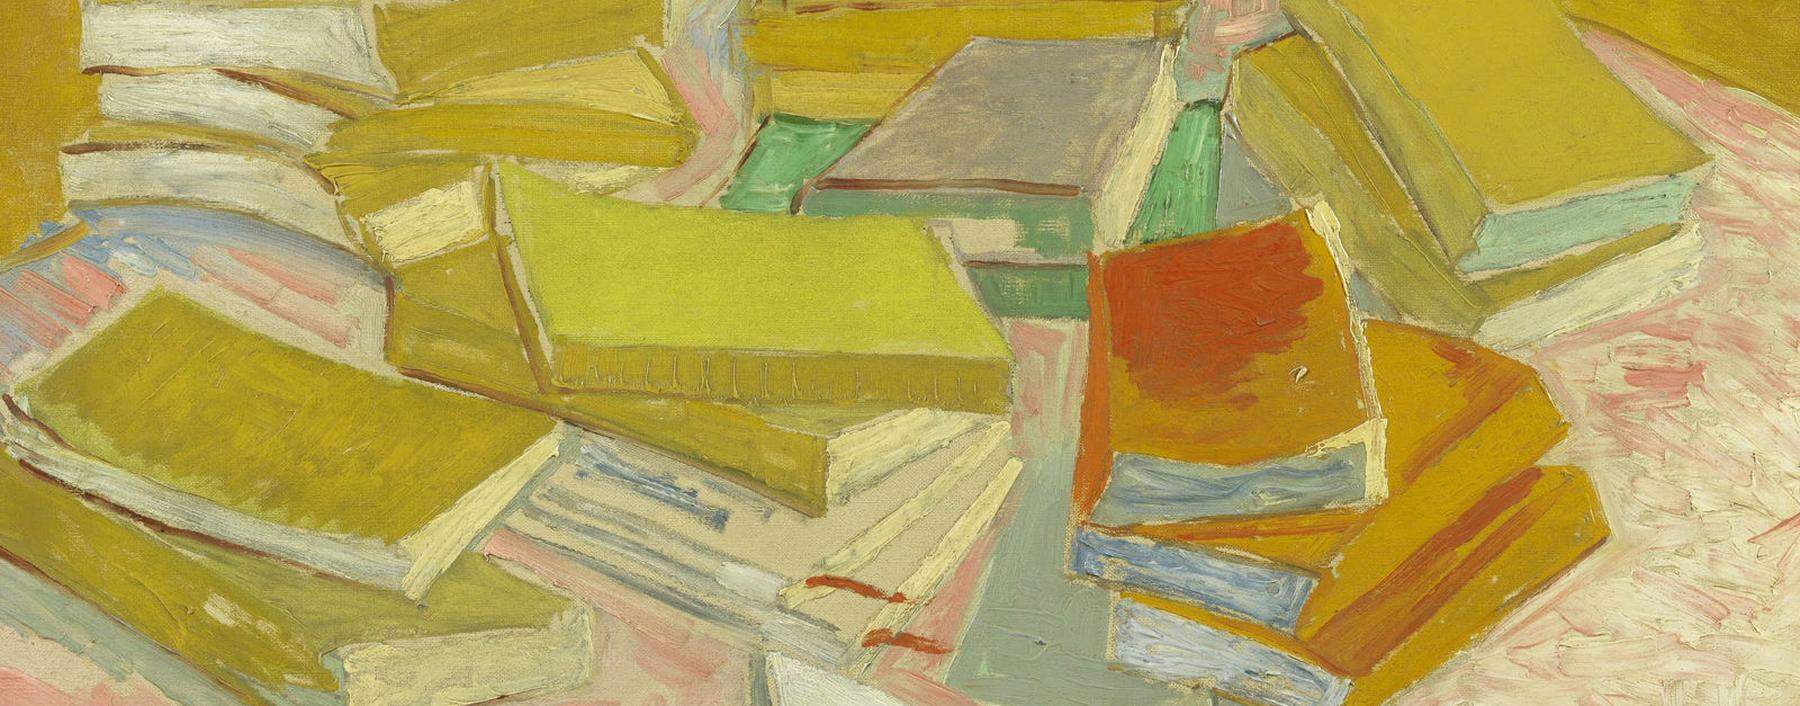 Unhygienisch, ja gefährlich fanden viele das Ausleihen von Büchern. Van Gogh, „Stapel französischer Romane“, 1887.